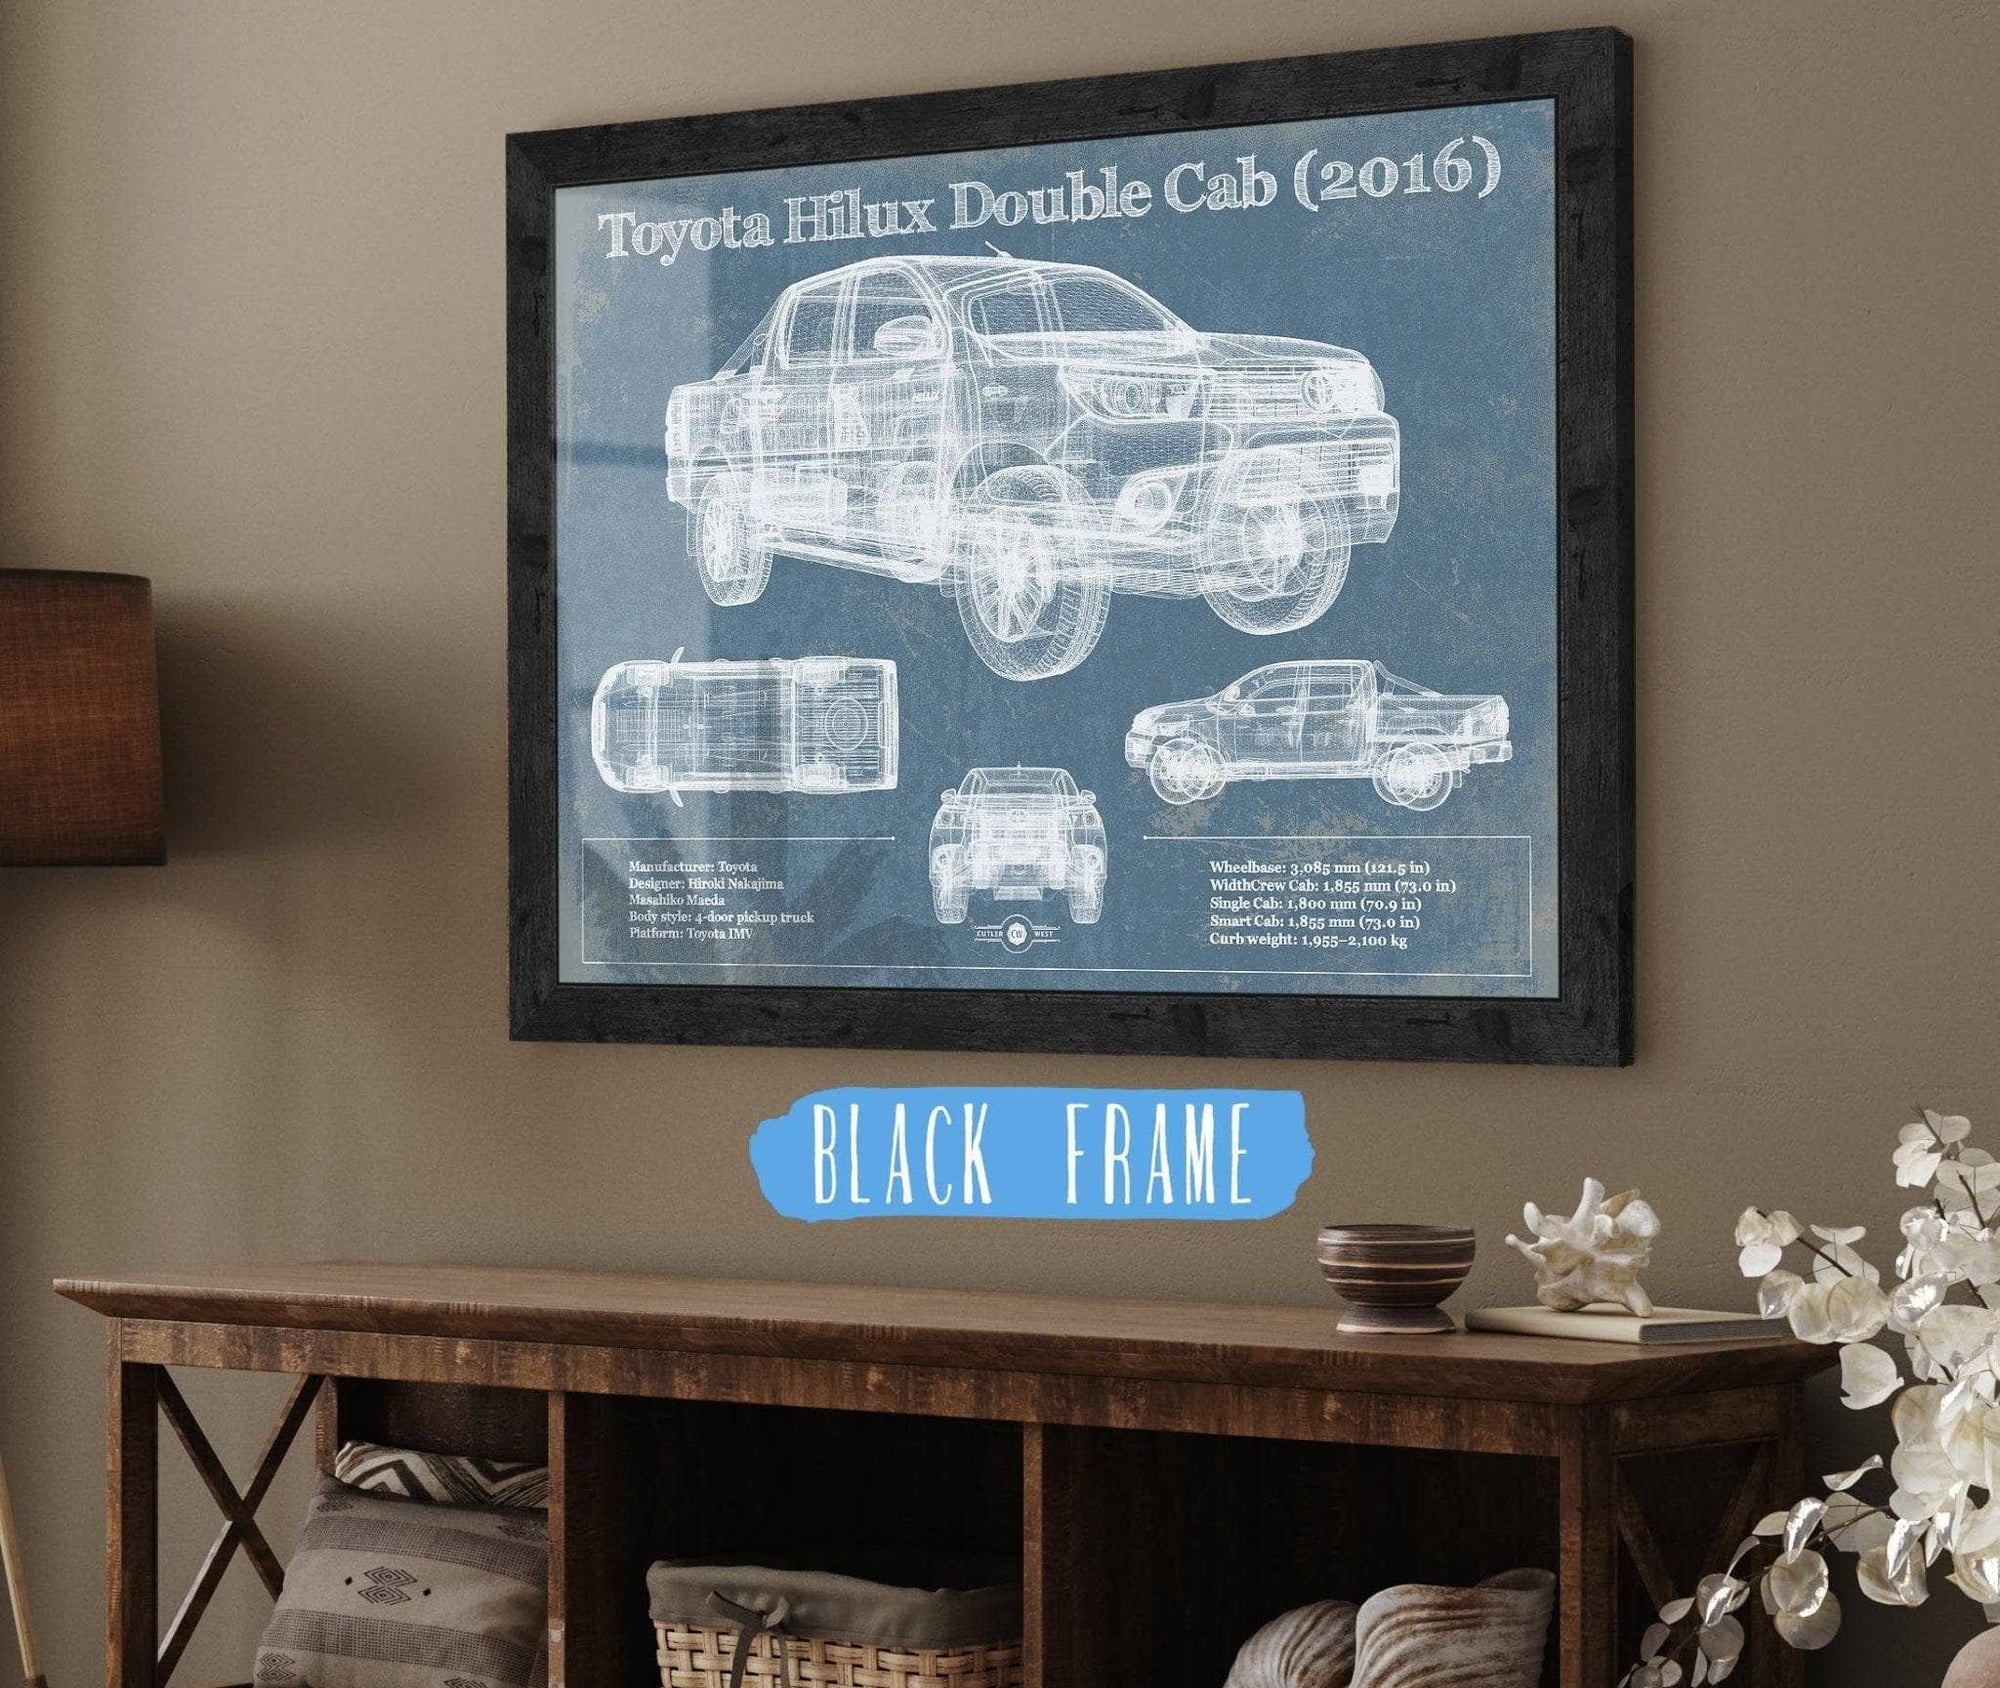 Cutler West 14" x 11" / Black Frame Toyota Hilux Double Cab (2016) Vintage Blueprint Auto Print 845000208-14"-x-11"6860